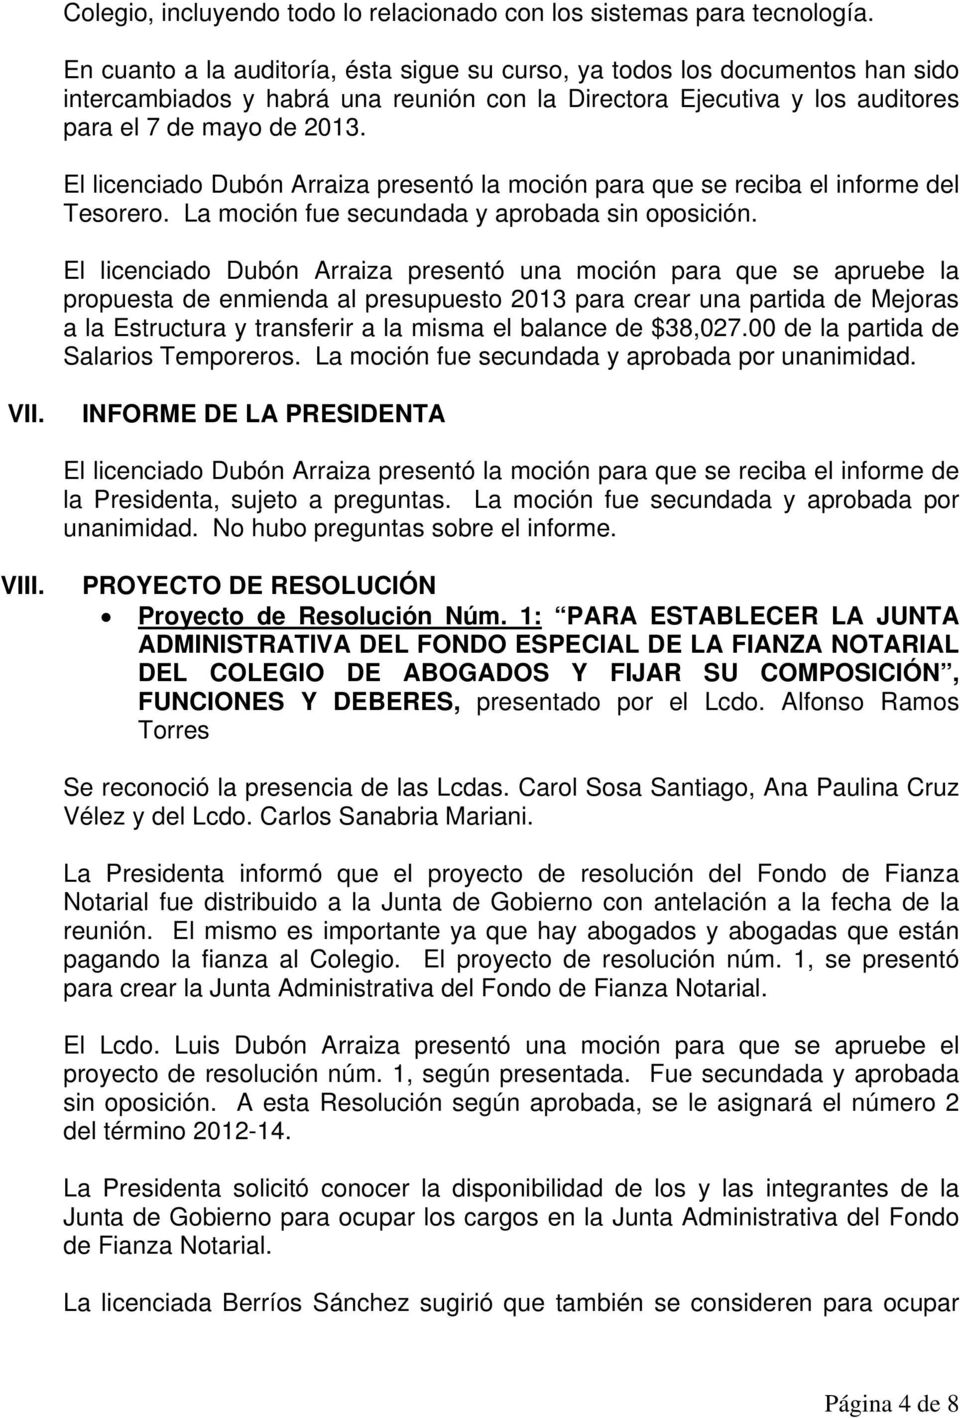 El licenciado Dubón Arraiza presentó la moción para que se reciba el informe del Tesorero. La moción fue secundada y aprobada sin oposición.